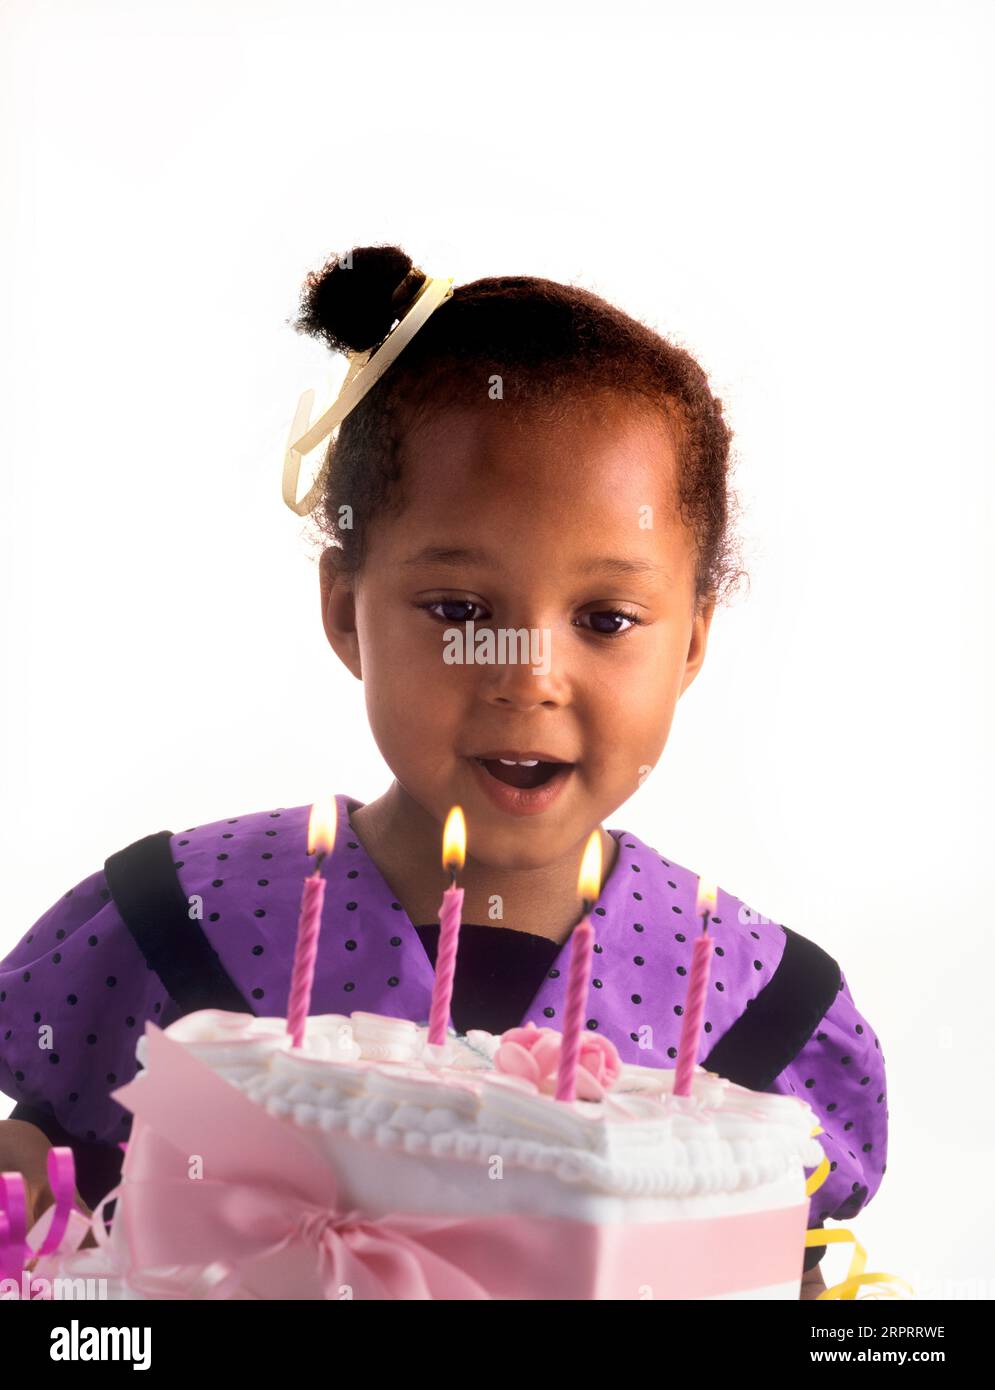 GEBURTSTAGSKINDER MÄDCHEN HAPPY Cake Kerzen 4 Jahre alt süßes hübsches britisches afrikanisches Afro Karibik Mädchen feiert mit ihrem besonderen Geburtstagskuchen machen Stockfoto